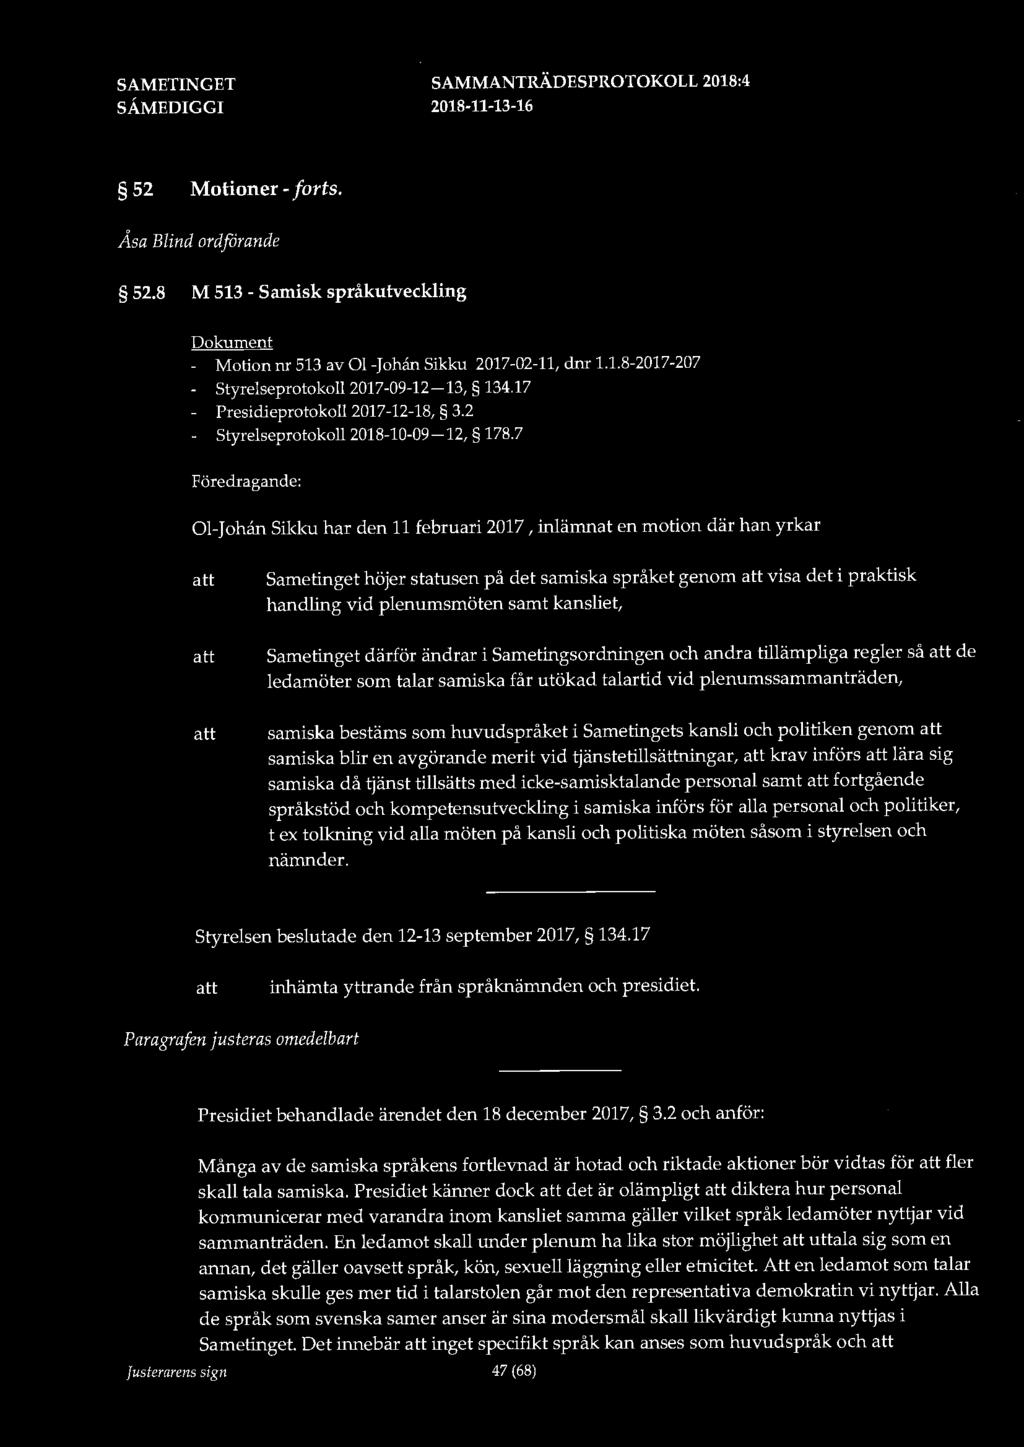 52 Motioner - forts. Åsa Blind ordforande 52.8 M 513 - Samisk språkutveckling Dokument - Motion nr 513 av 01-Johån Sikku 2017-02-11, dnr 1.1.8-2017-207 - Styrelseprotokoll 2017-09-12-13, 134.